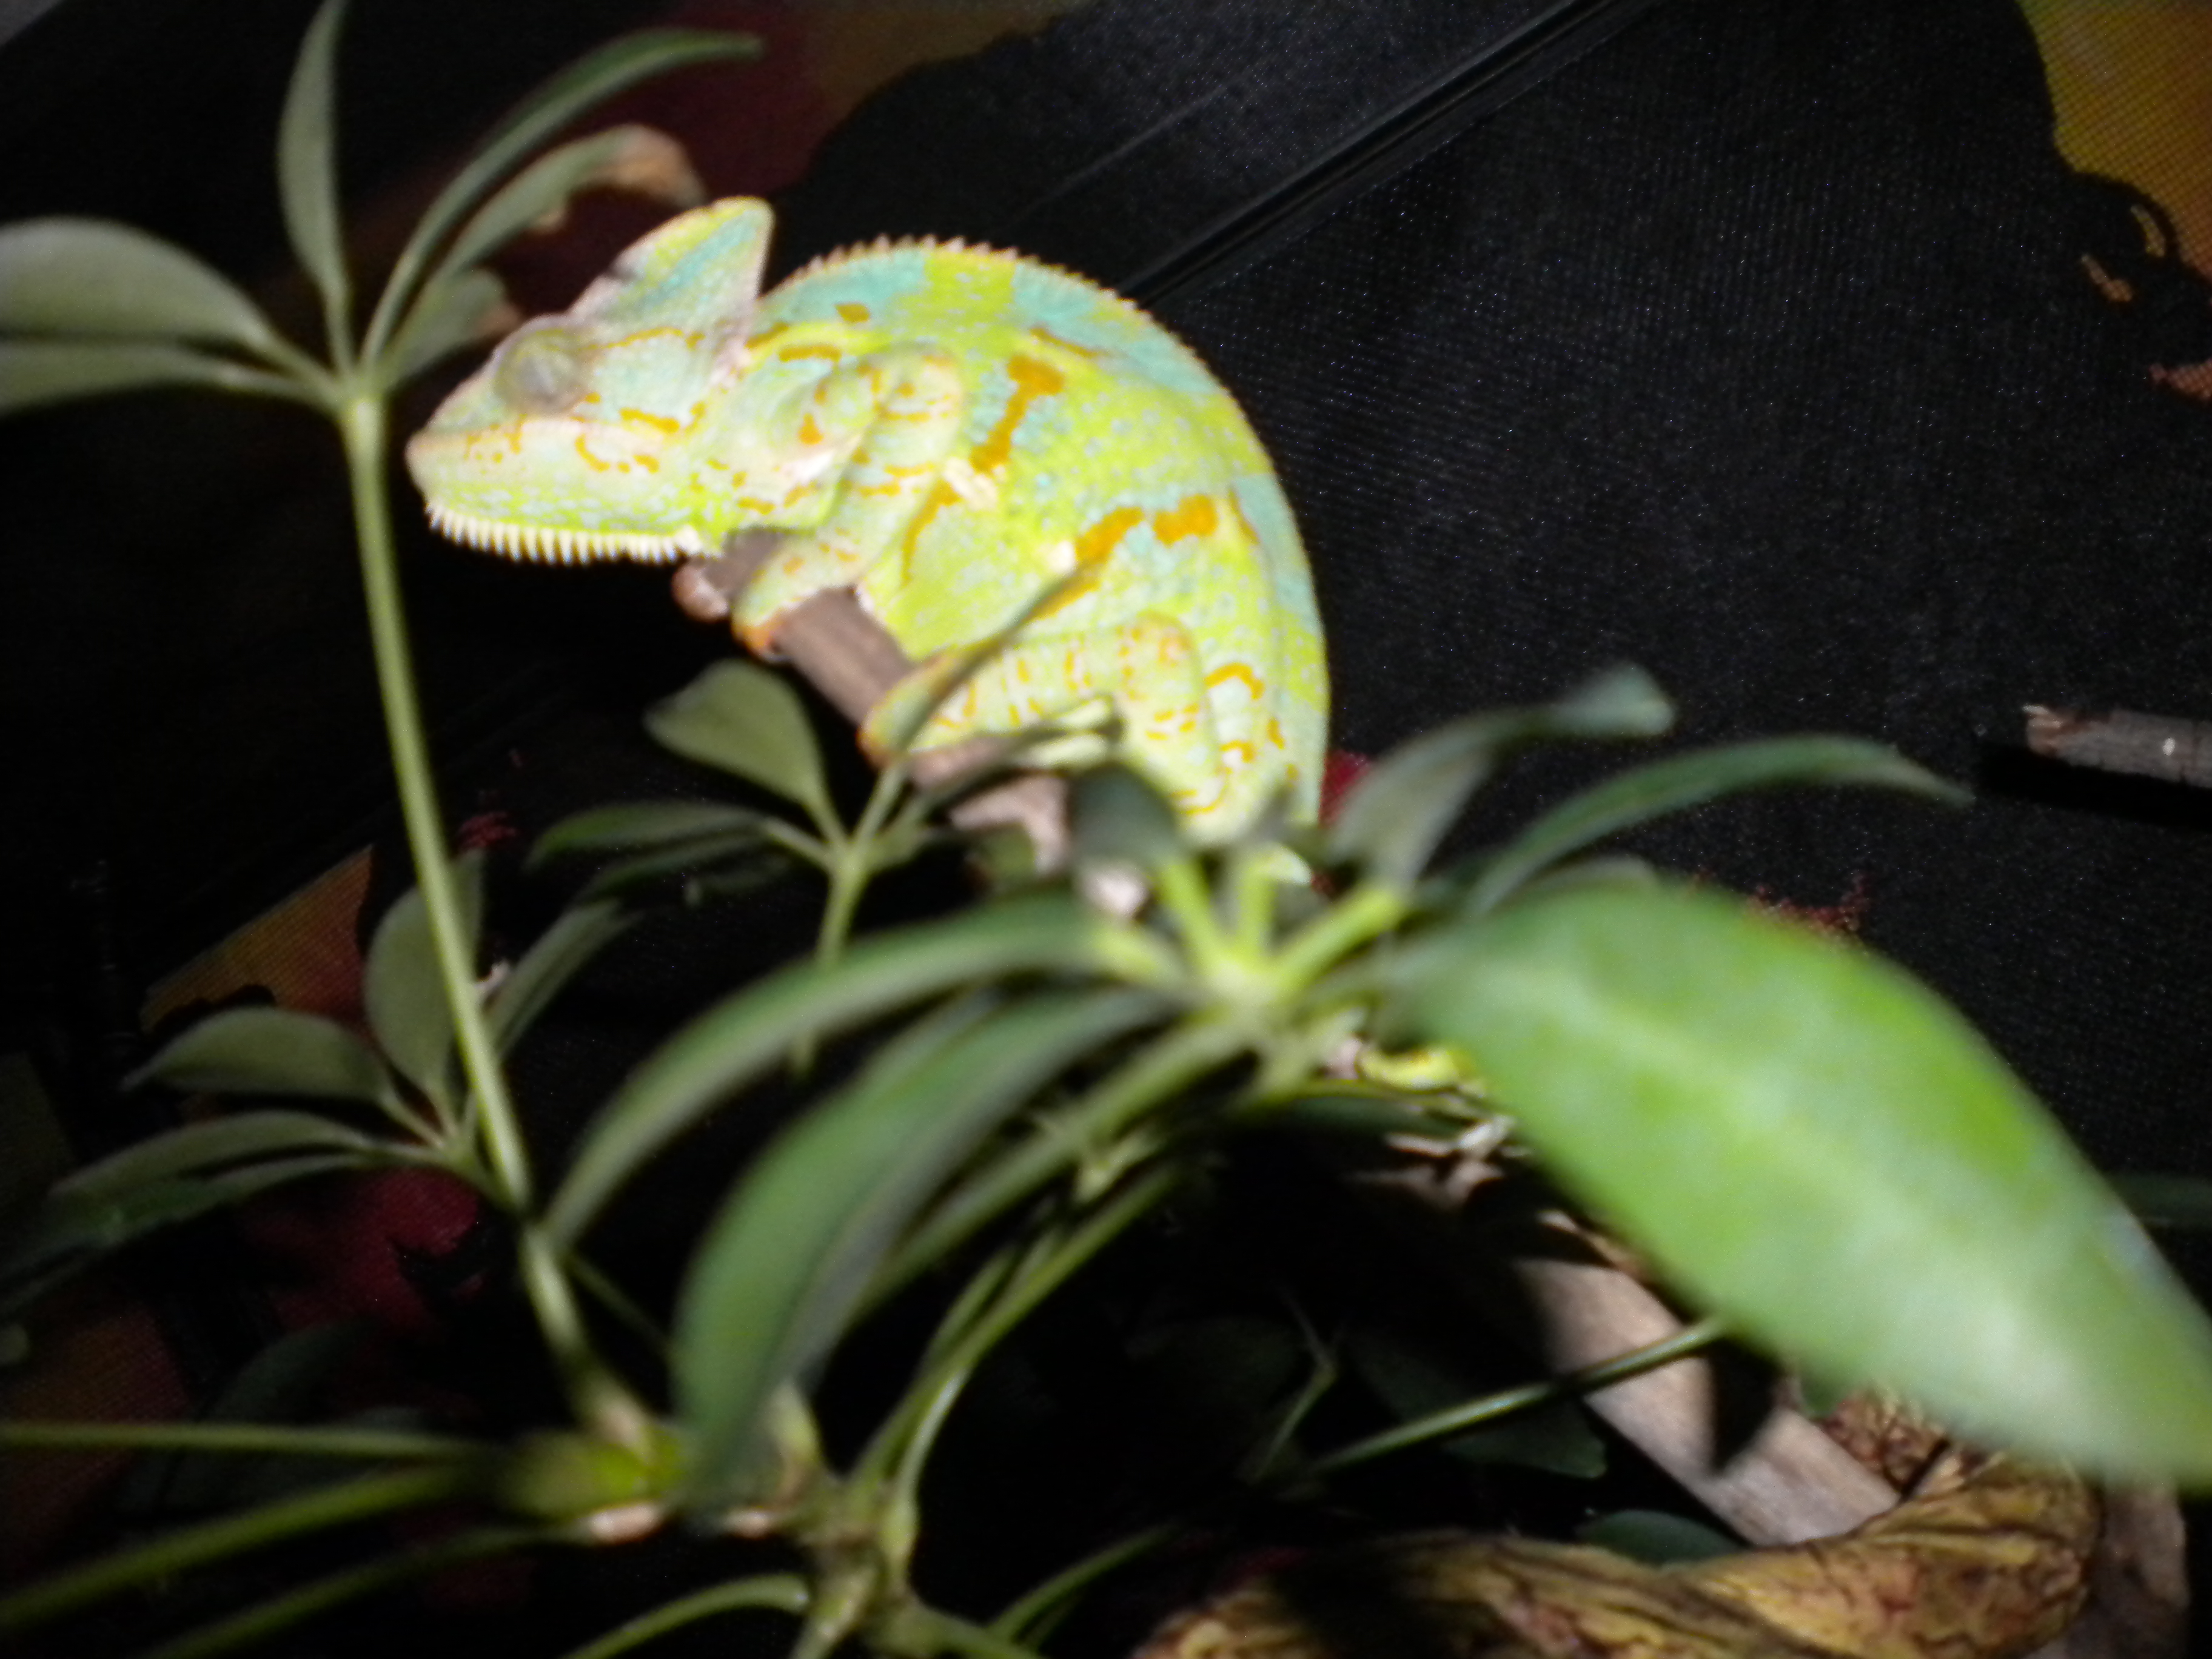 Female Veiled Chameleon Sleeping